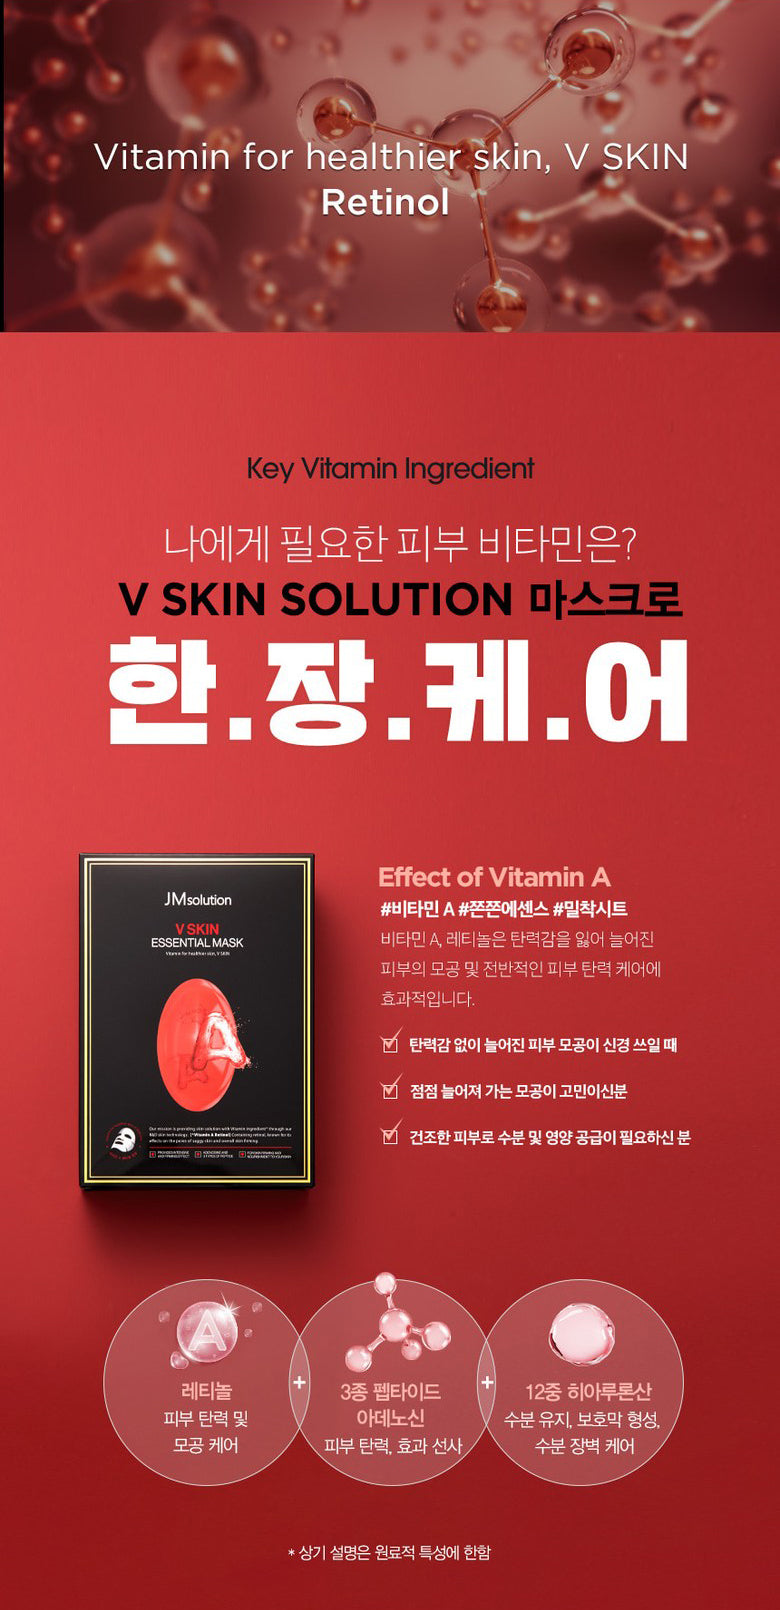 JMsolution V Skin Essential Masks Vitamin A 10 Sheets Facial Skincare